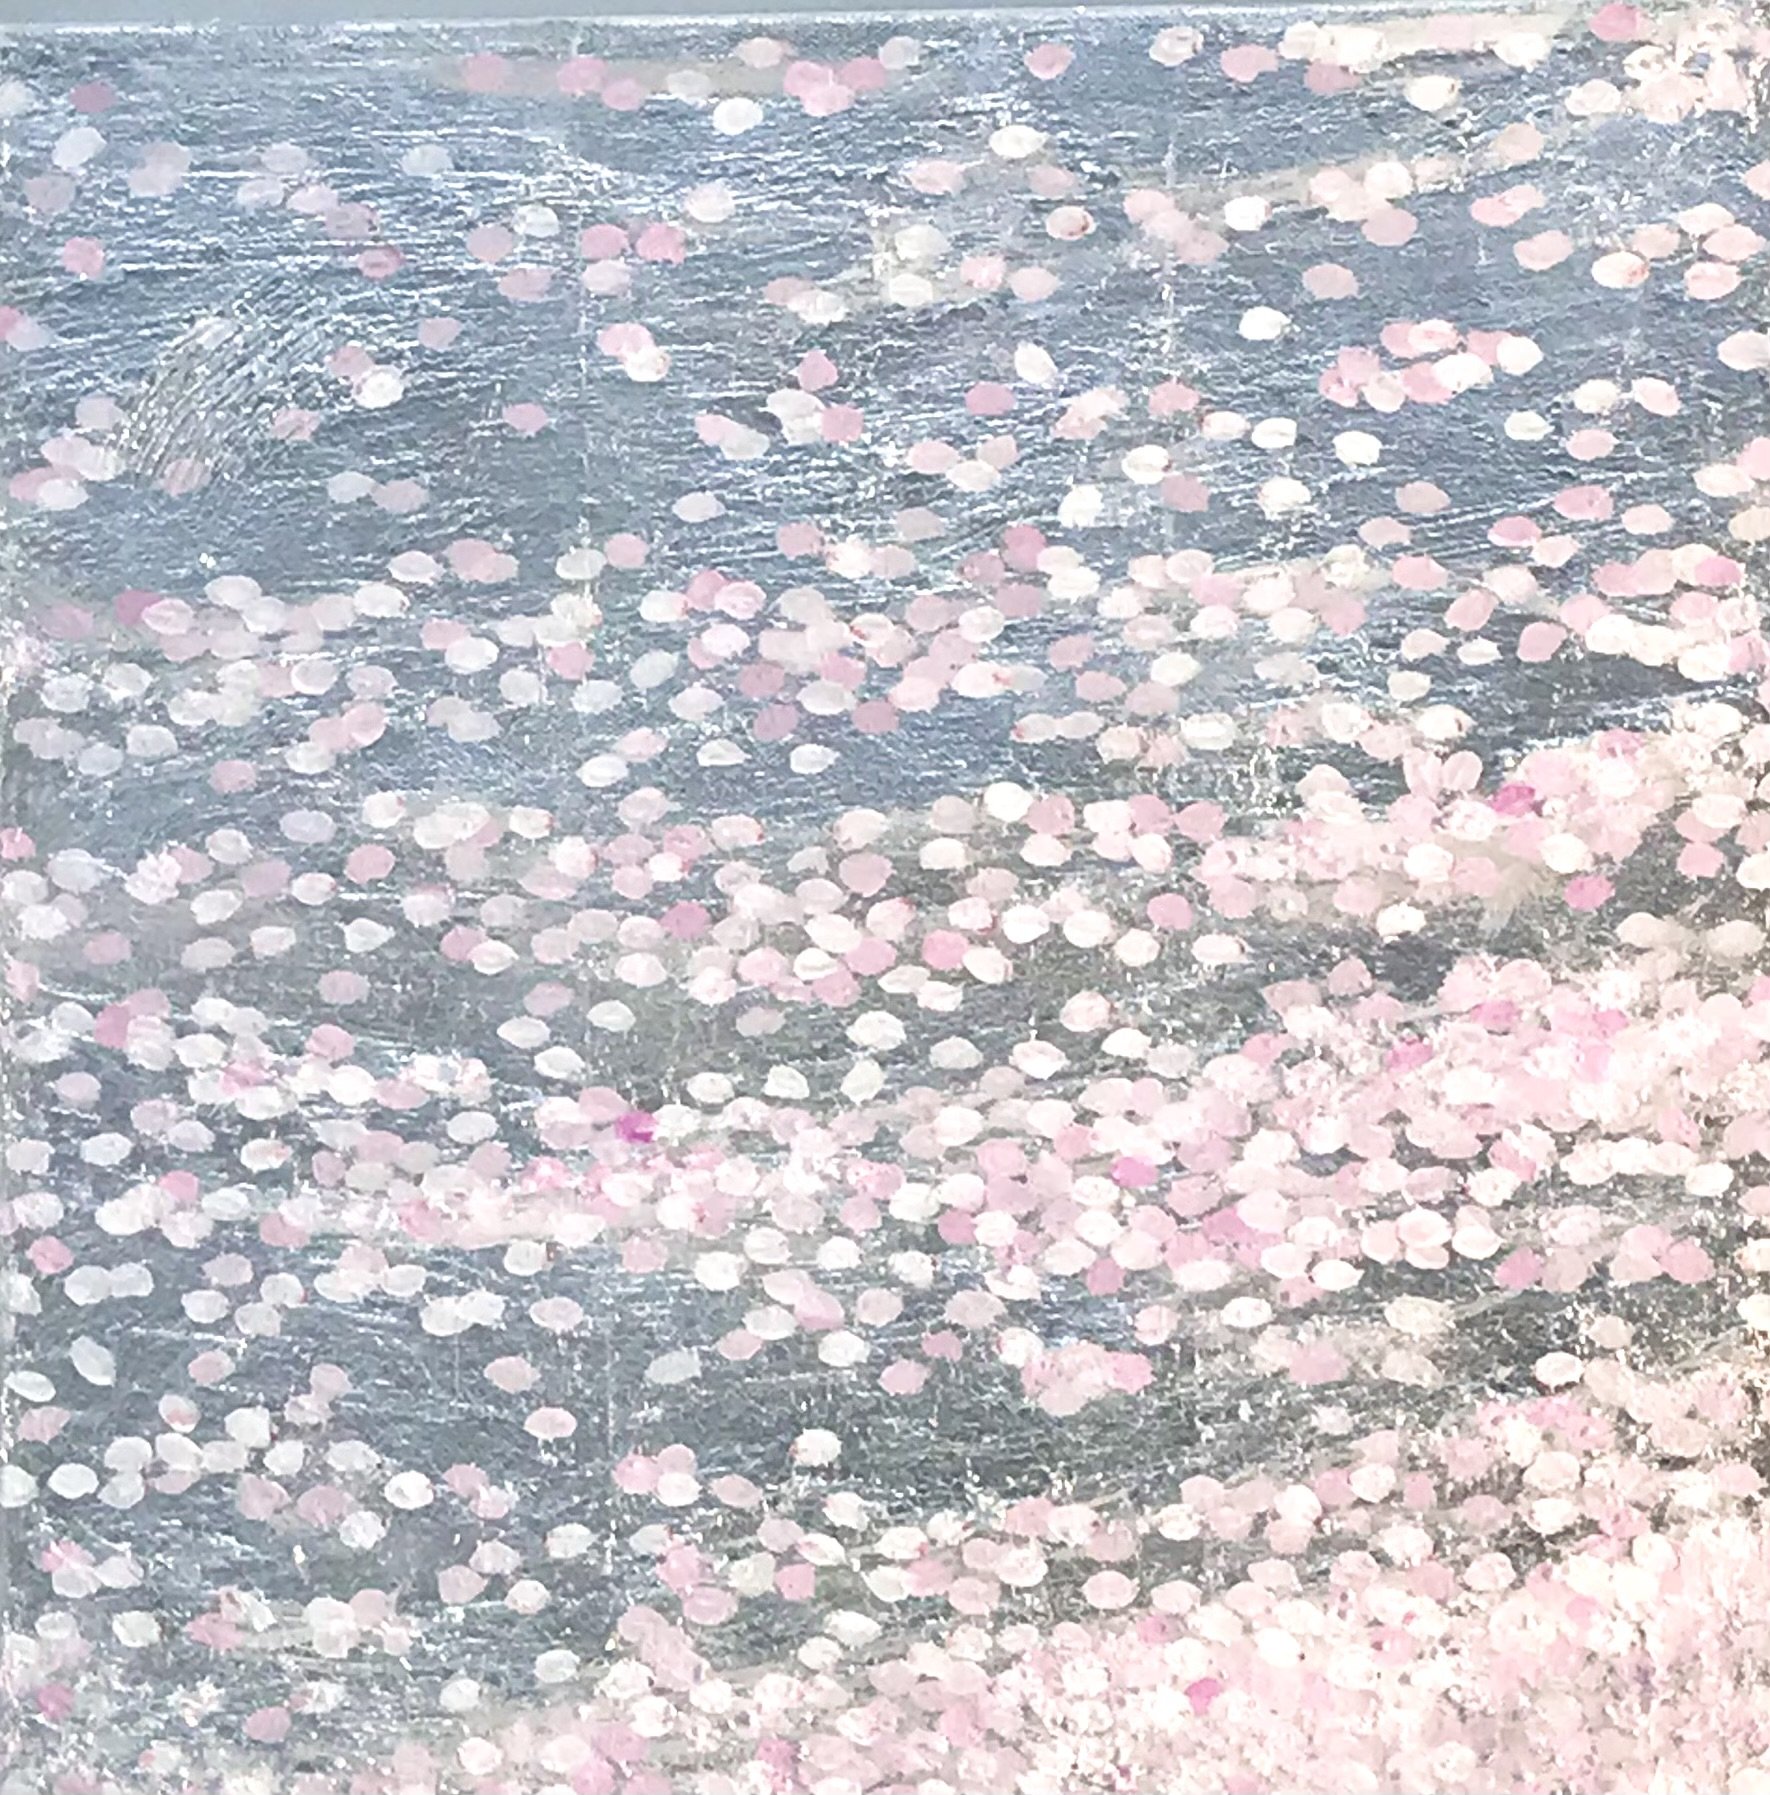 The Eliza Scidmore Cherry Blossom (Copy)